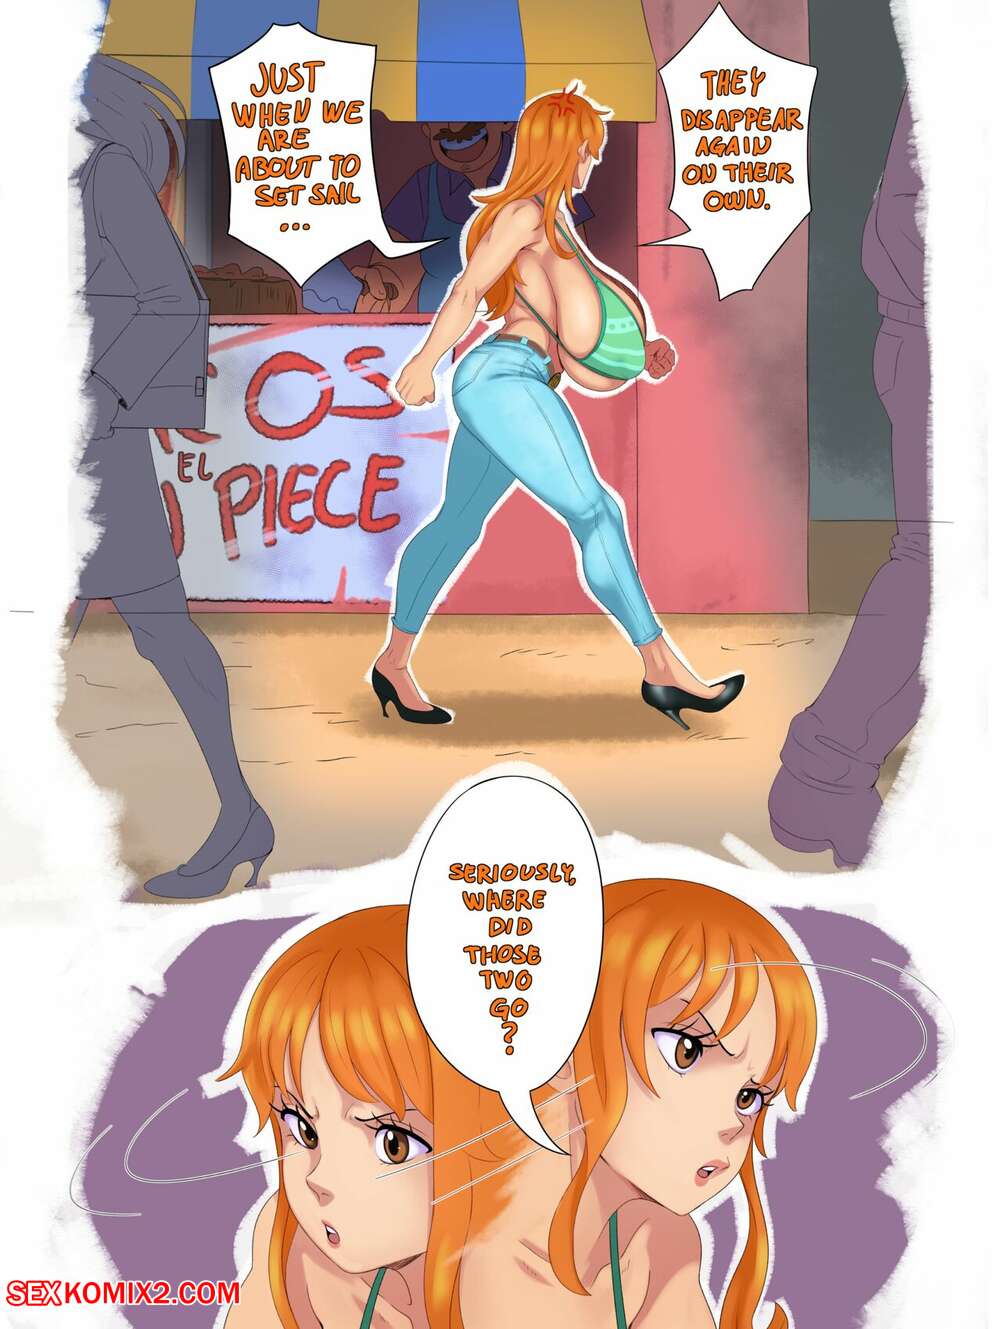 One Piece Shemale Sex - âœ…ï¸ Porn comic One Piece Comic. SunnySunDown. Sex comic hot redhead beauty |  Porn comics in English for adults only | sexkomix2.com